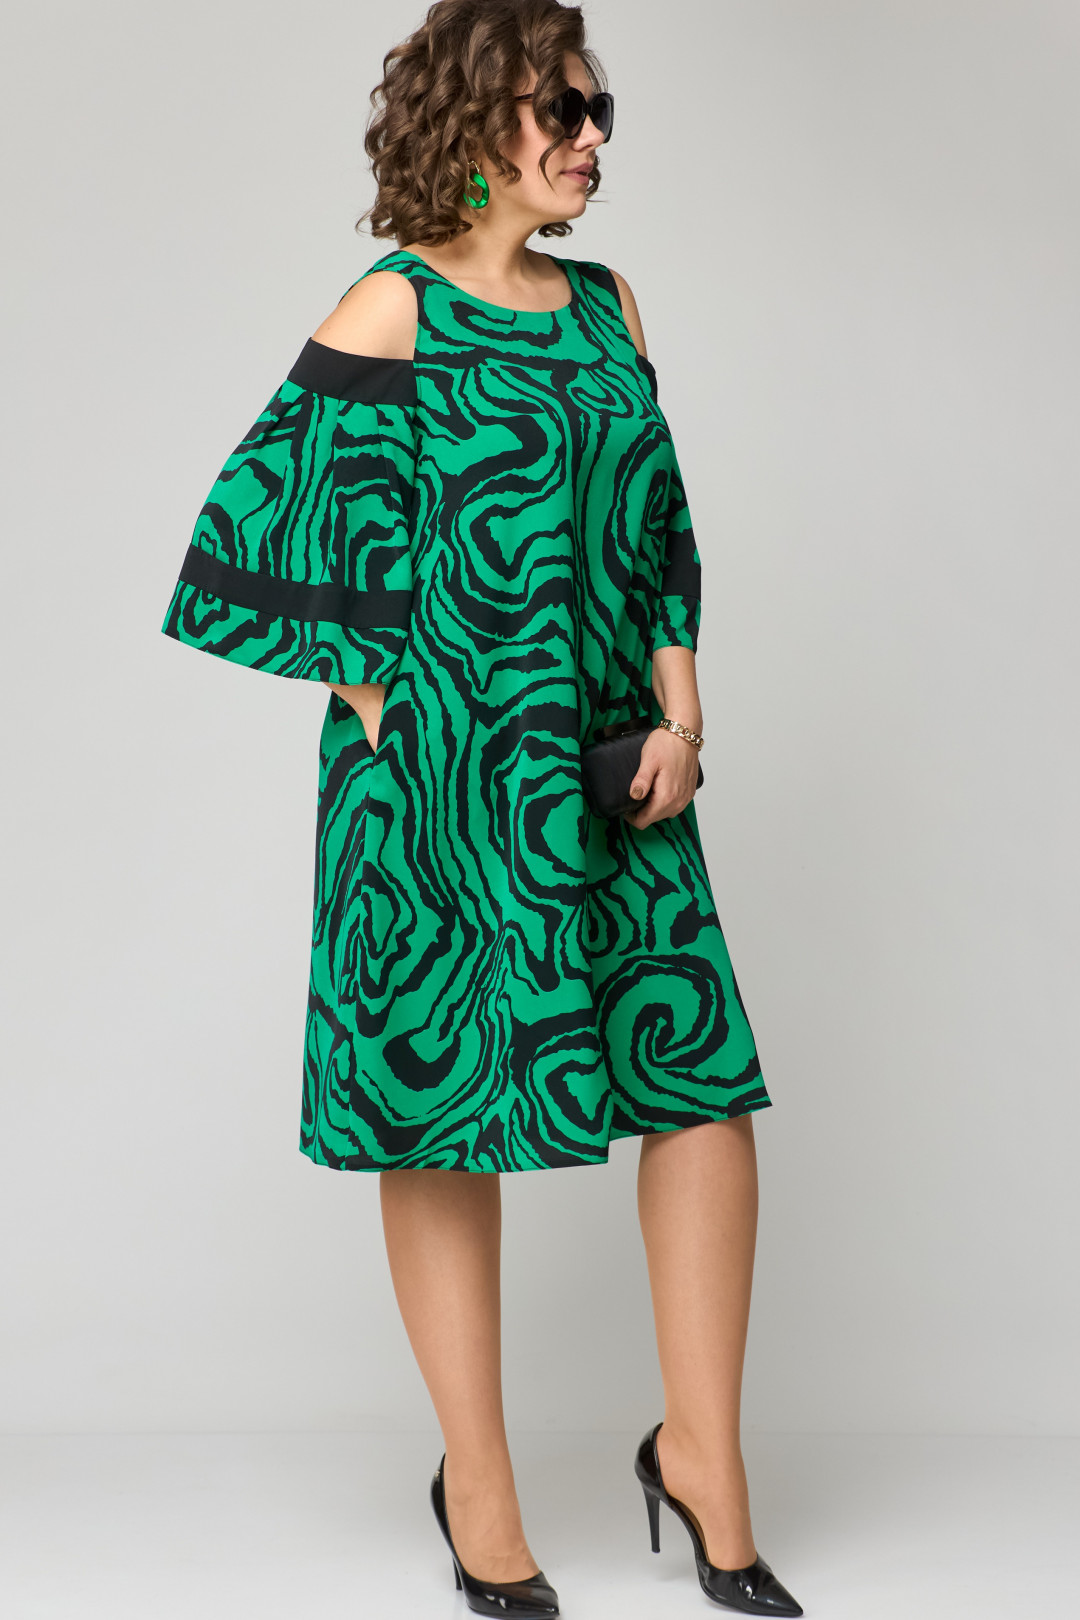 Платье EVA GRANT 7145 зеленый принт